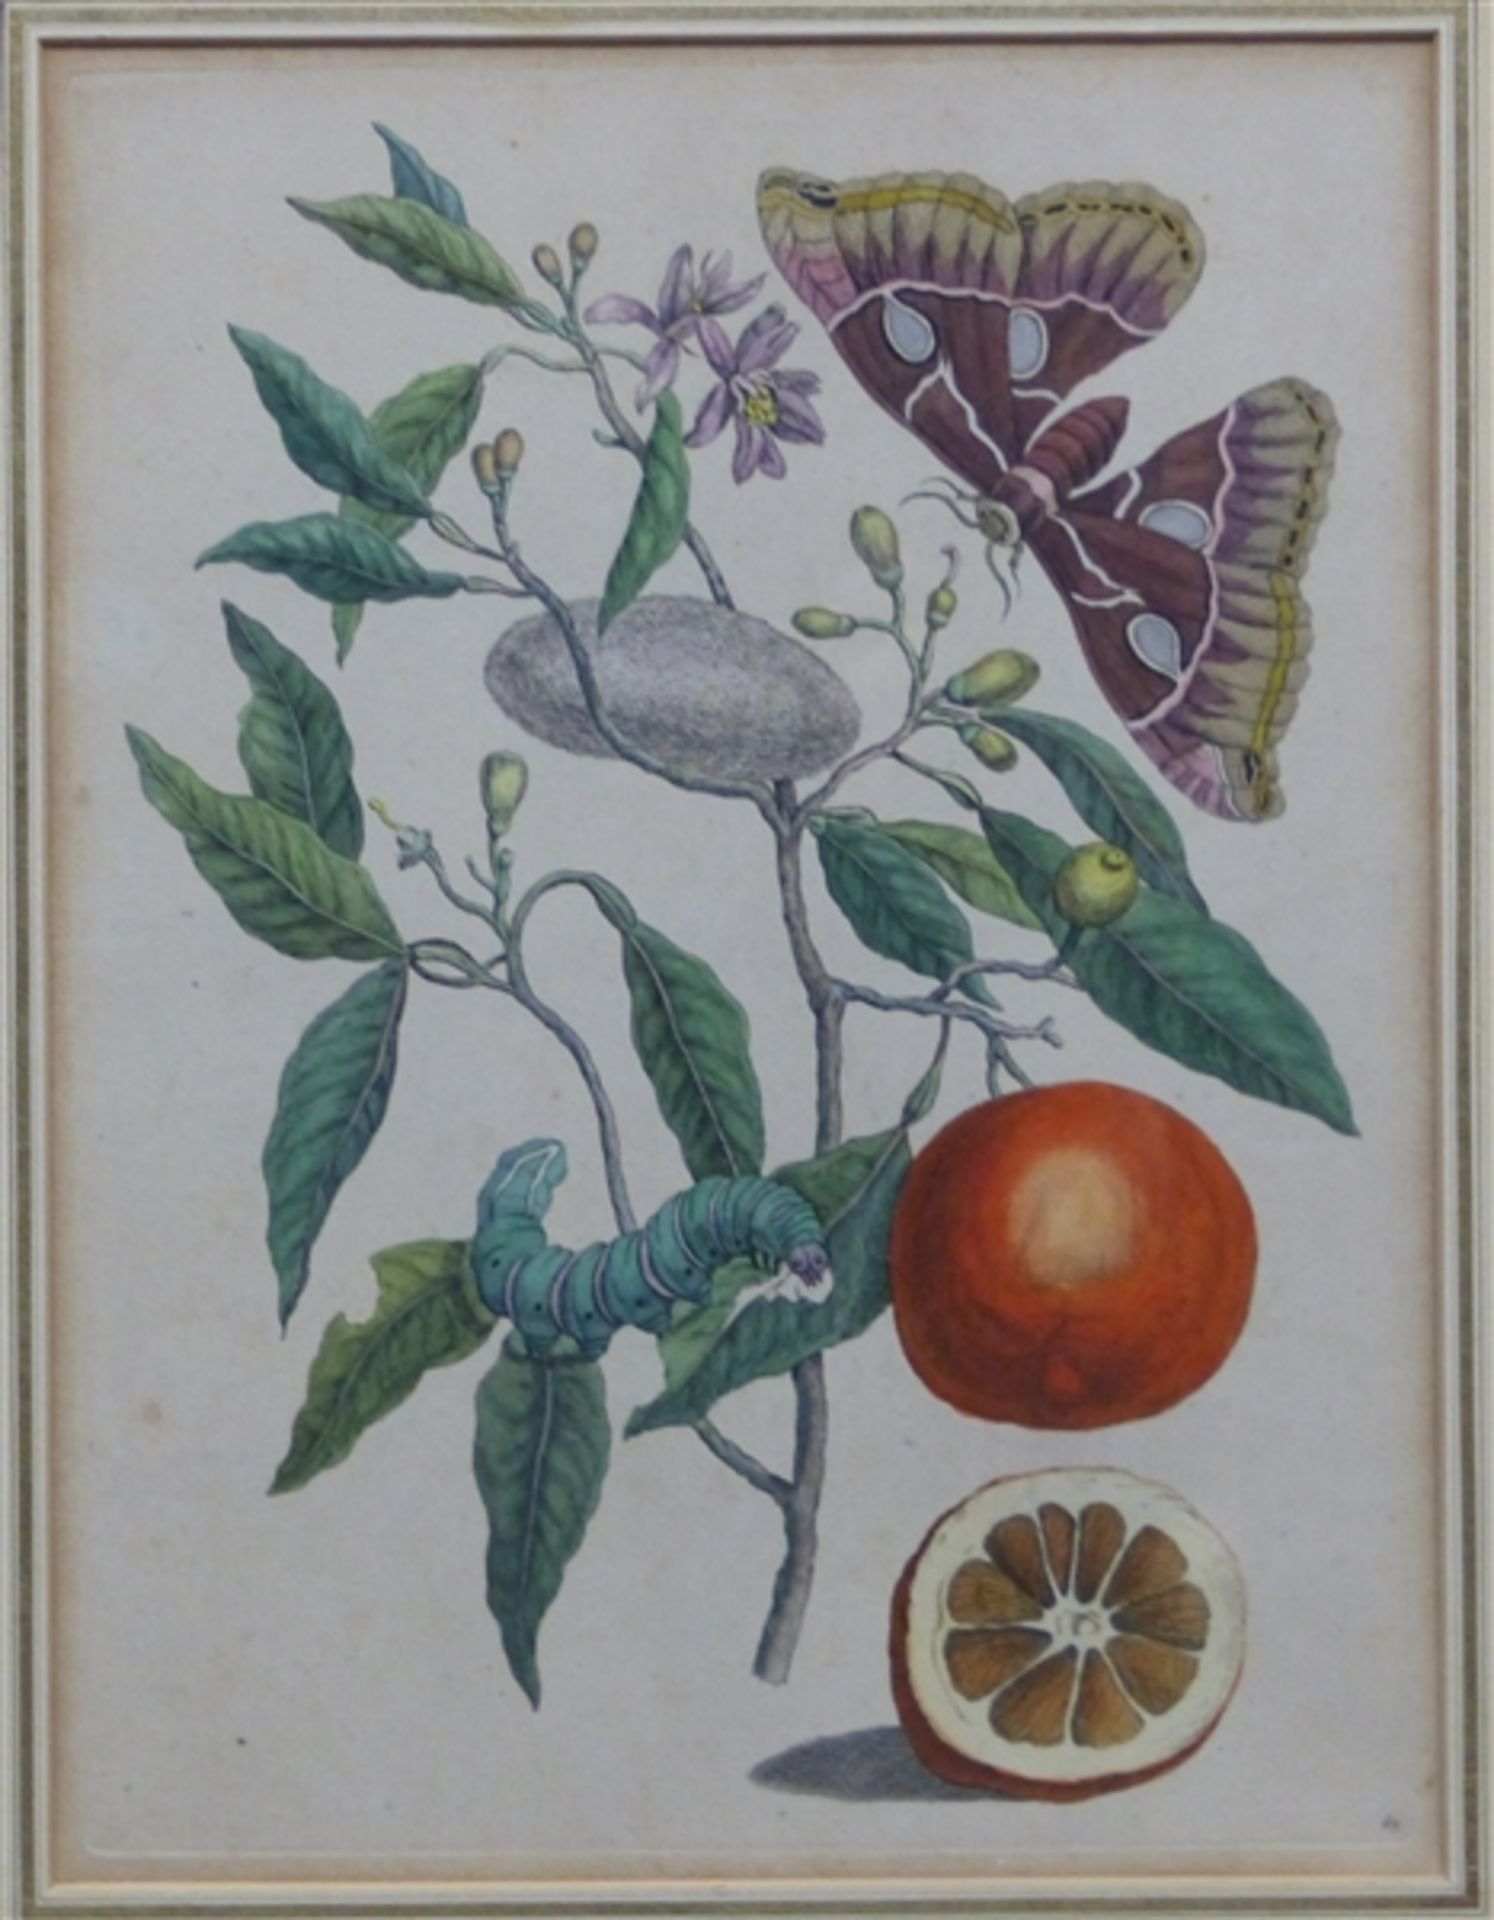 Radierung, 19. Jh. coloriert, "Blätter, Obst und Insekten", 39x32 cm, im Rahmen,